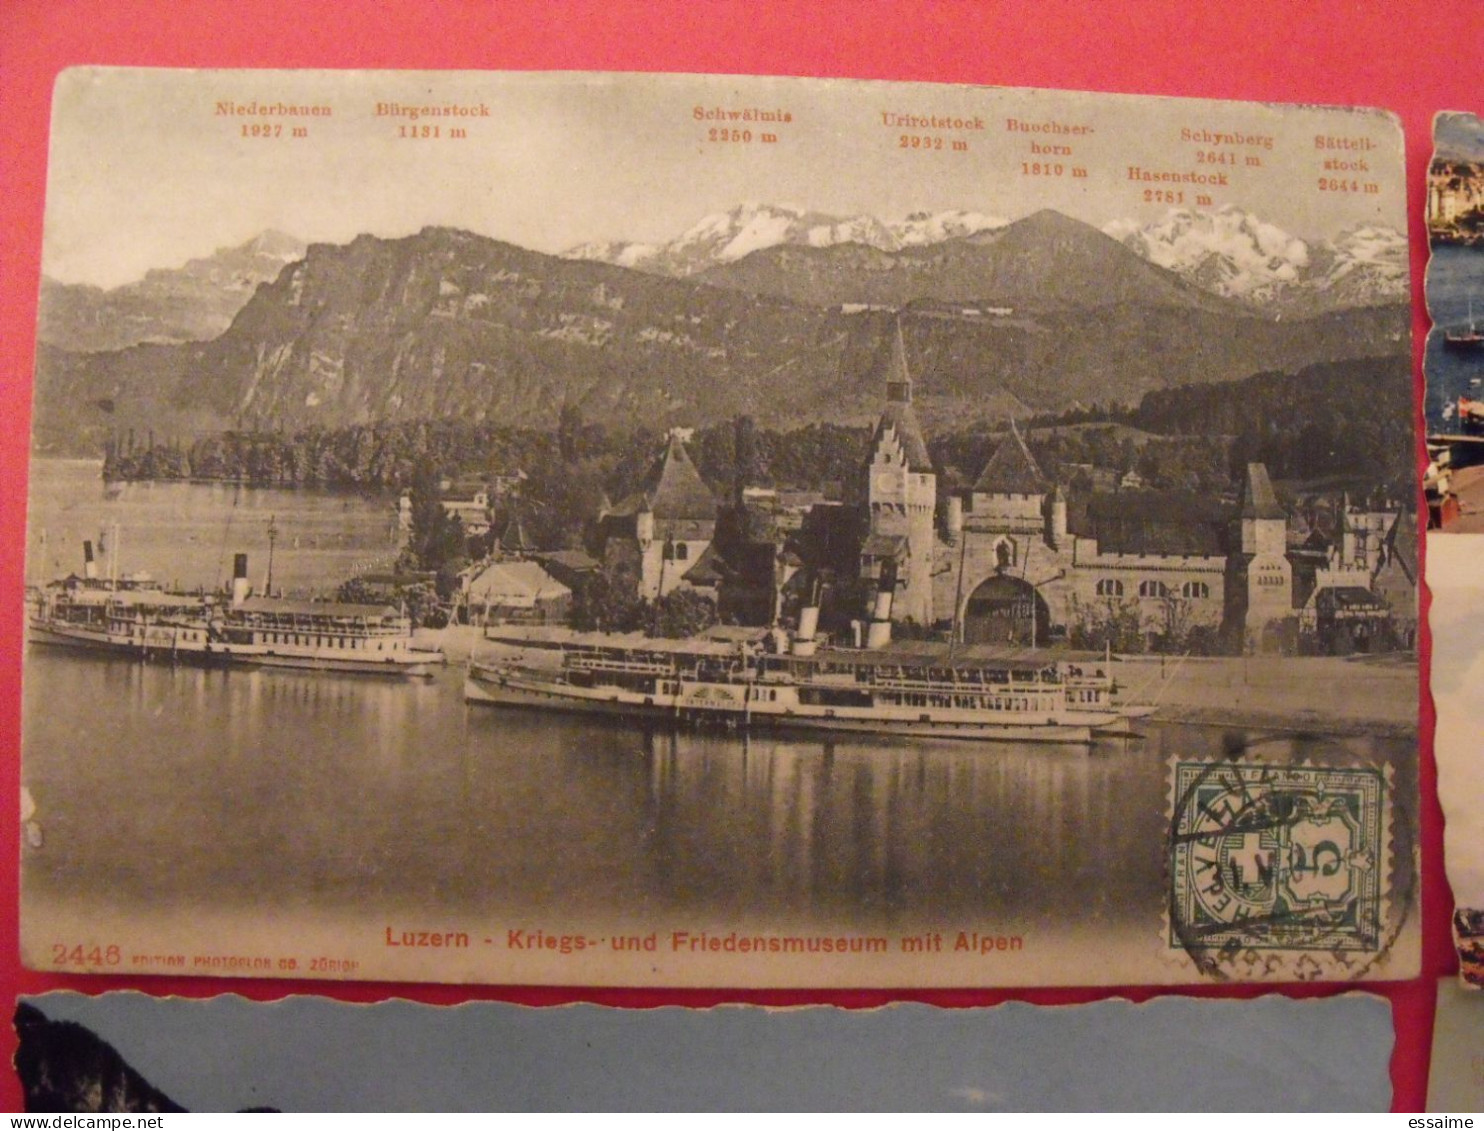 Lot De 8 Cartes Postales. Suisse. Rheinfall Spiez Genève Zurich Lac Léman Lausanne Ouchy Luzern - Sammlungen & Sammellose